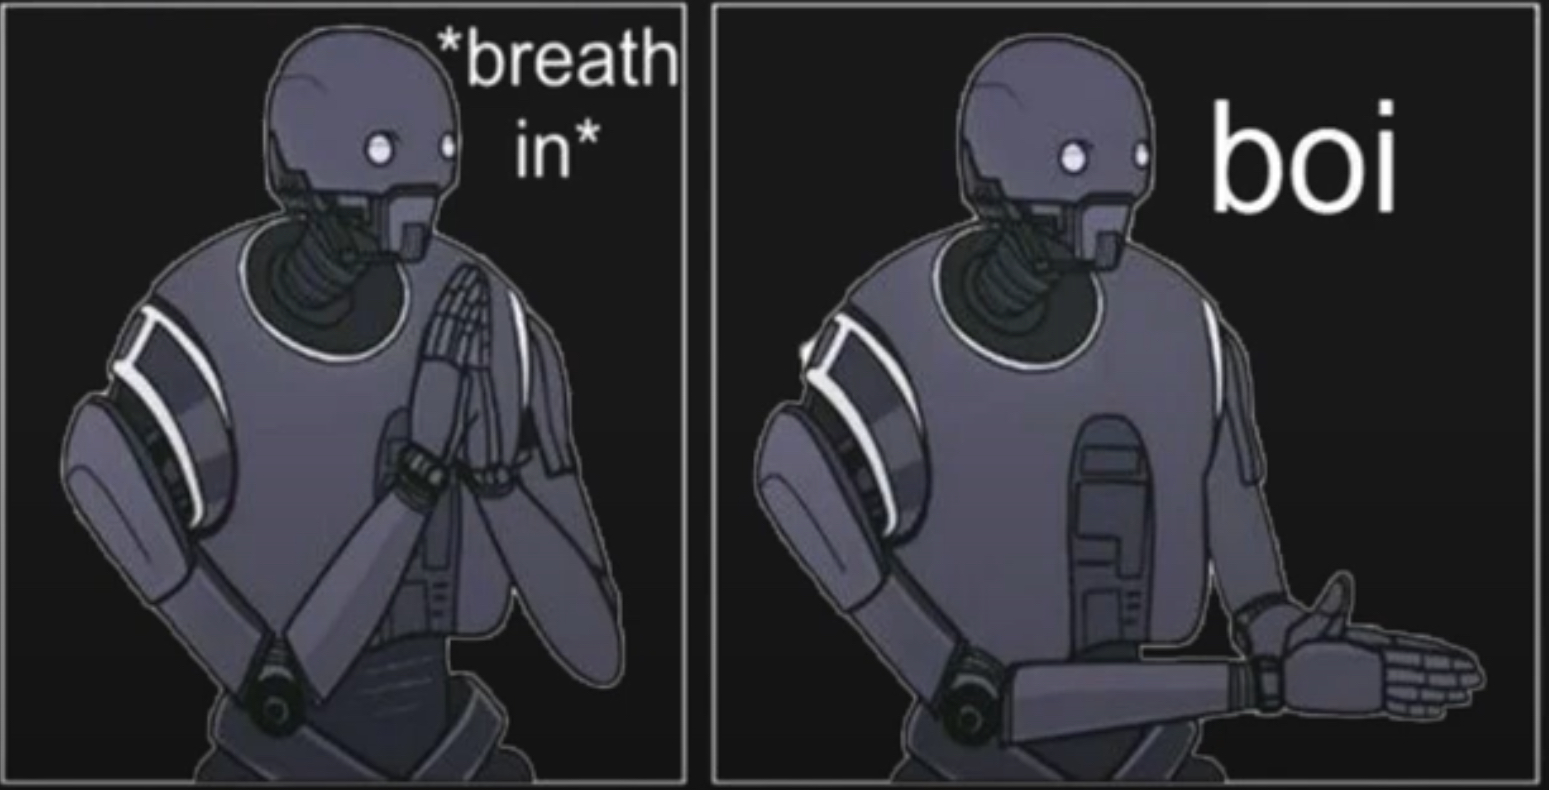 Star Wars *breath in* boi Blank Meme Template